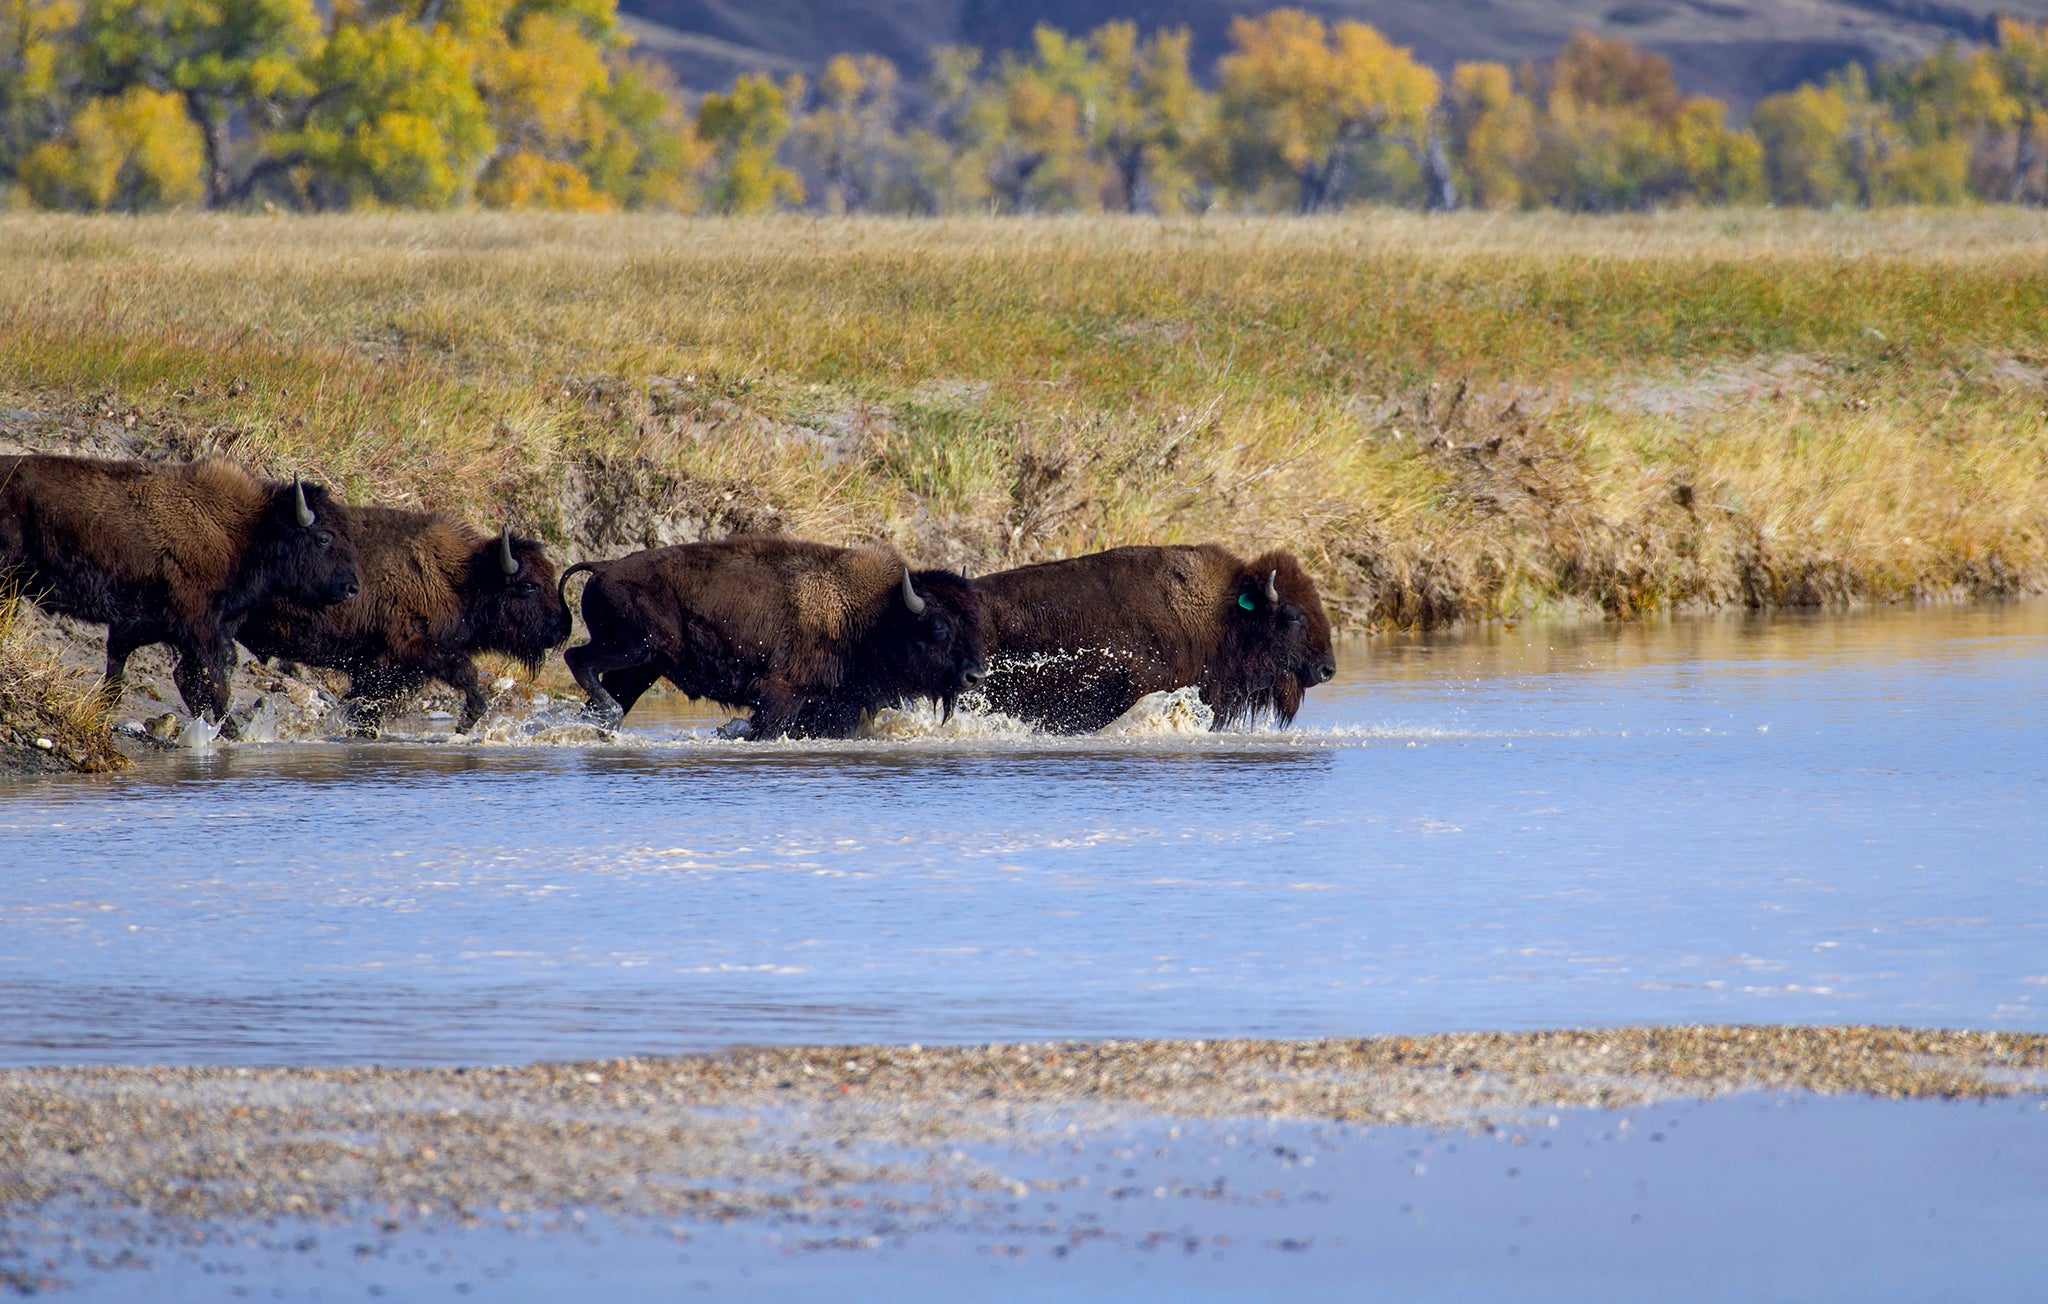 Lead Buffalo Cow Crosses river